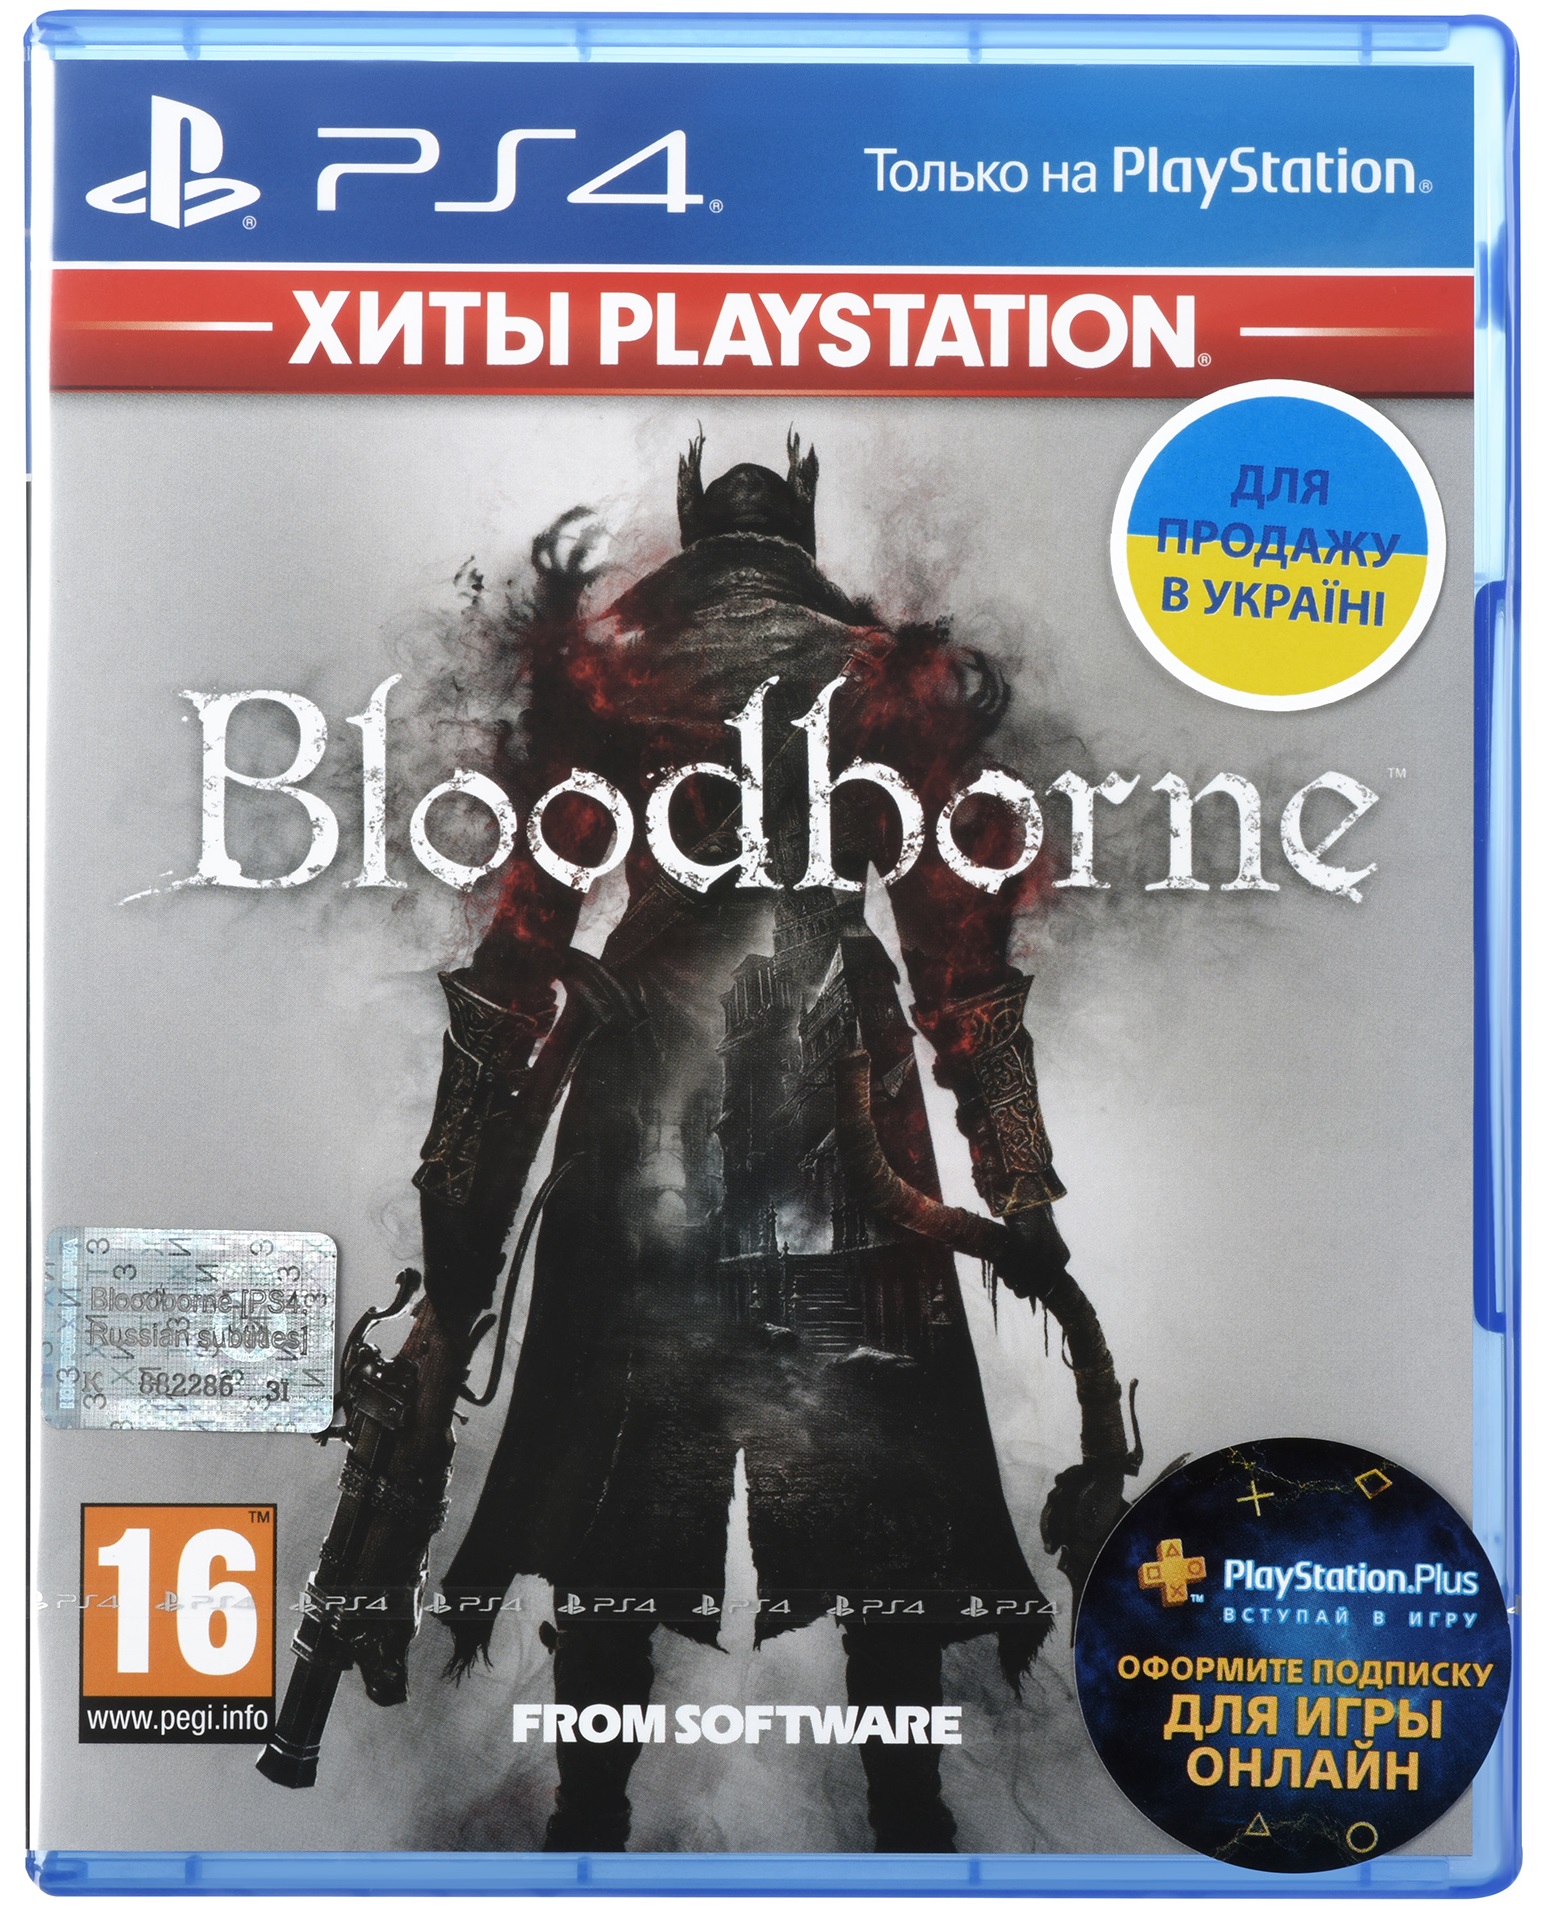 Игра Bloodborne PS4 Russian subtitles (9438472) в Киеве